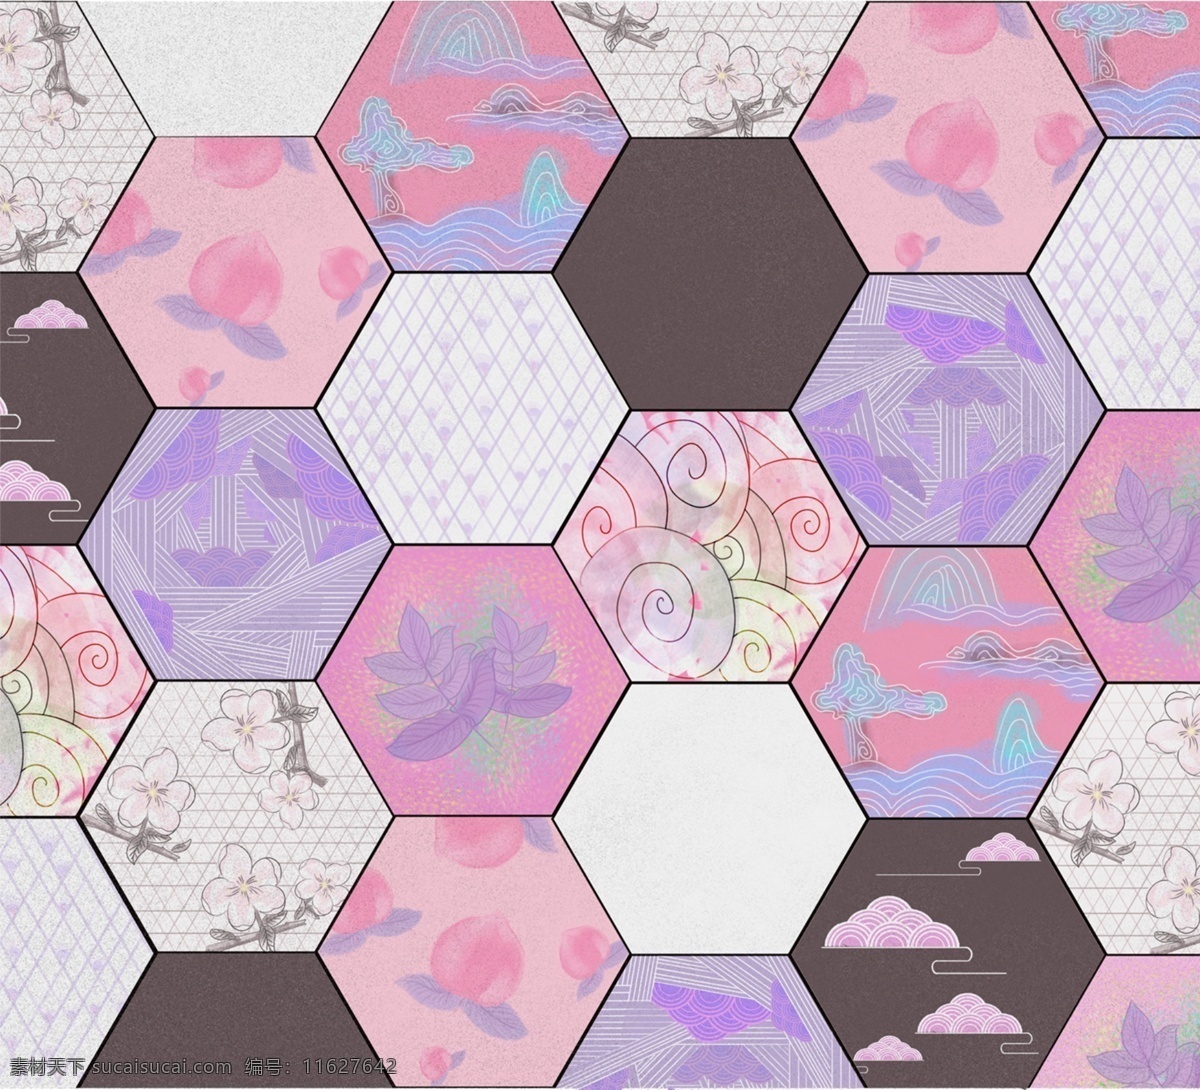 六角 星 地毯 图案 温馨 手绘 风 六角星 地毯花纹 手绘风 粉色 中国风 几何图形 小元素 底纹边框 背景底纹